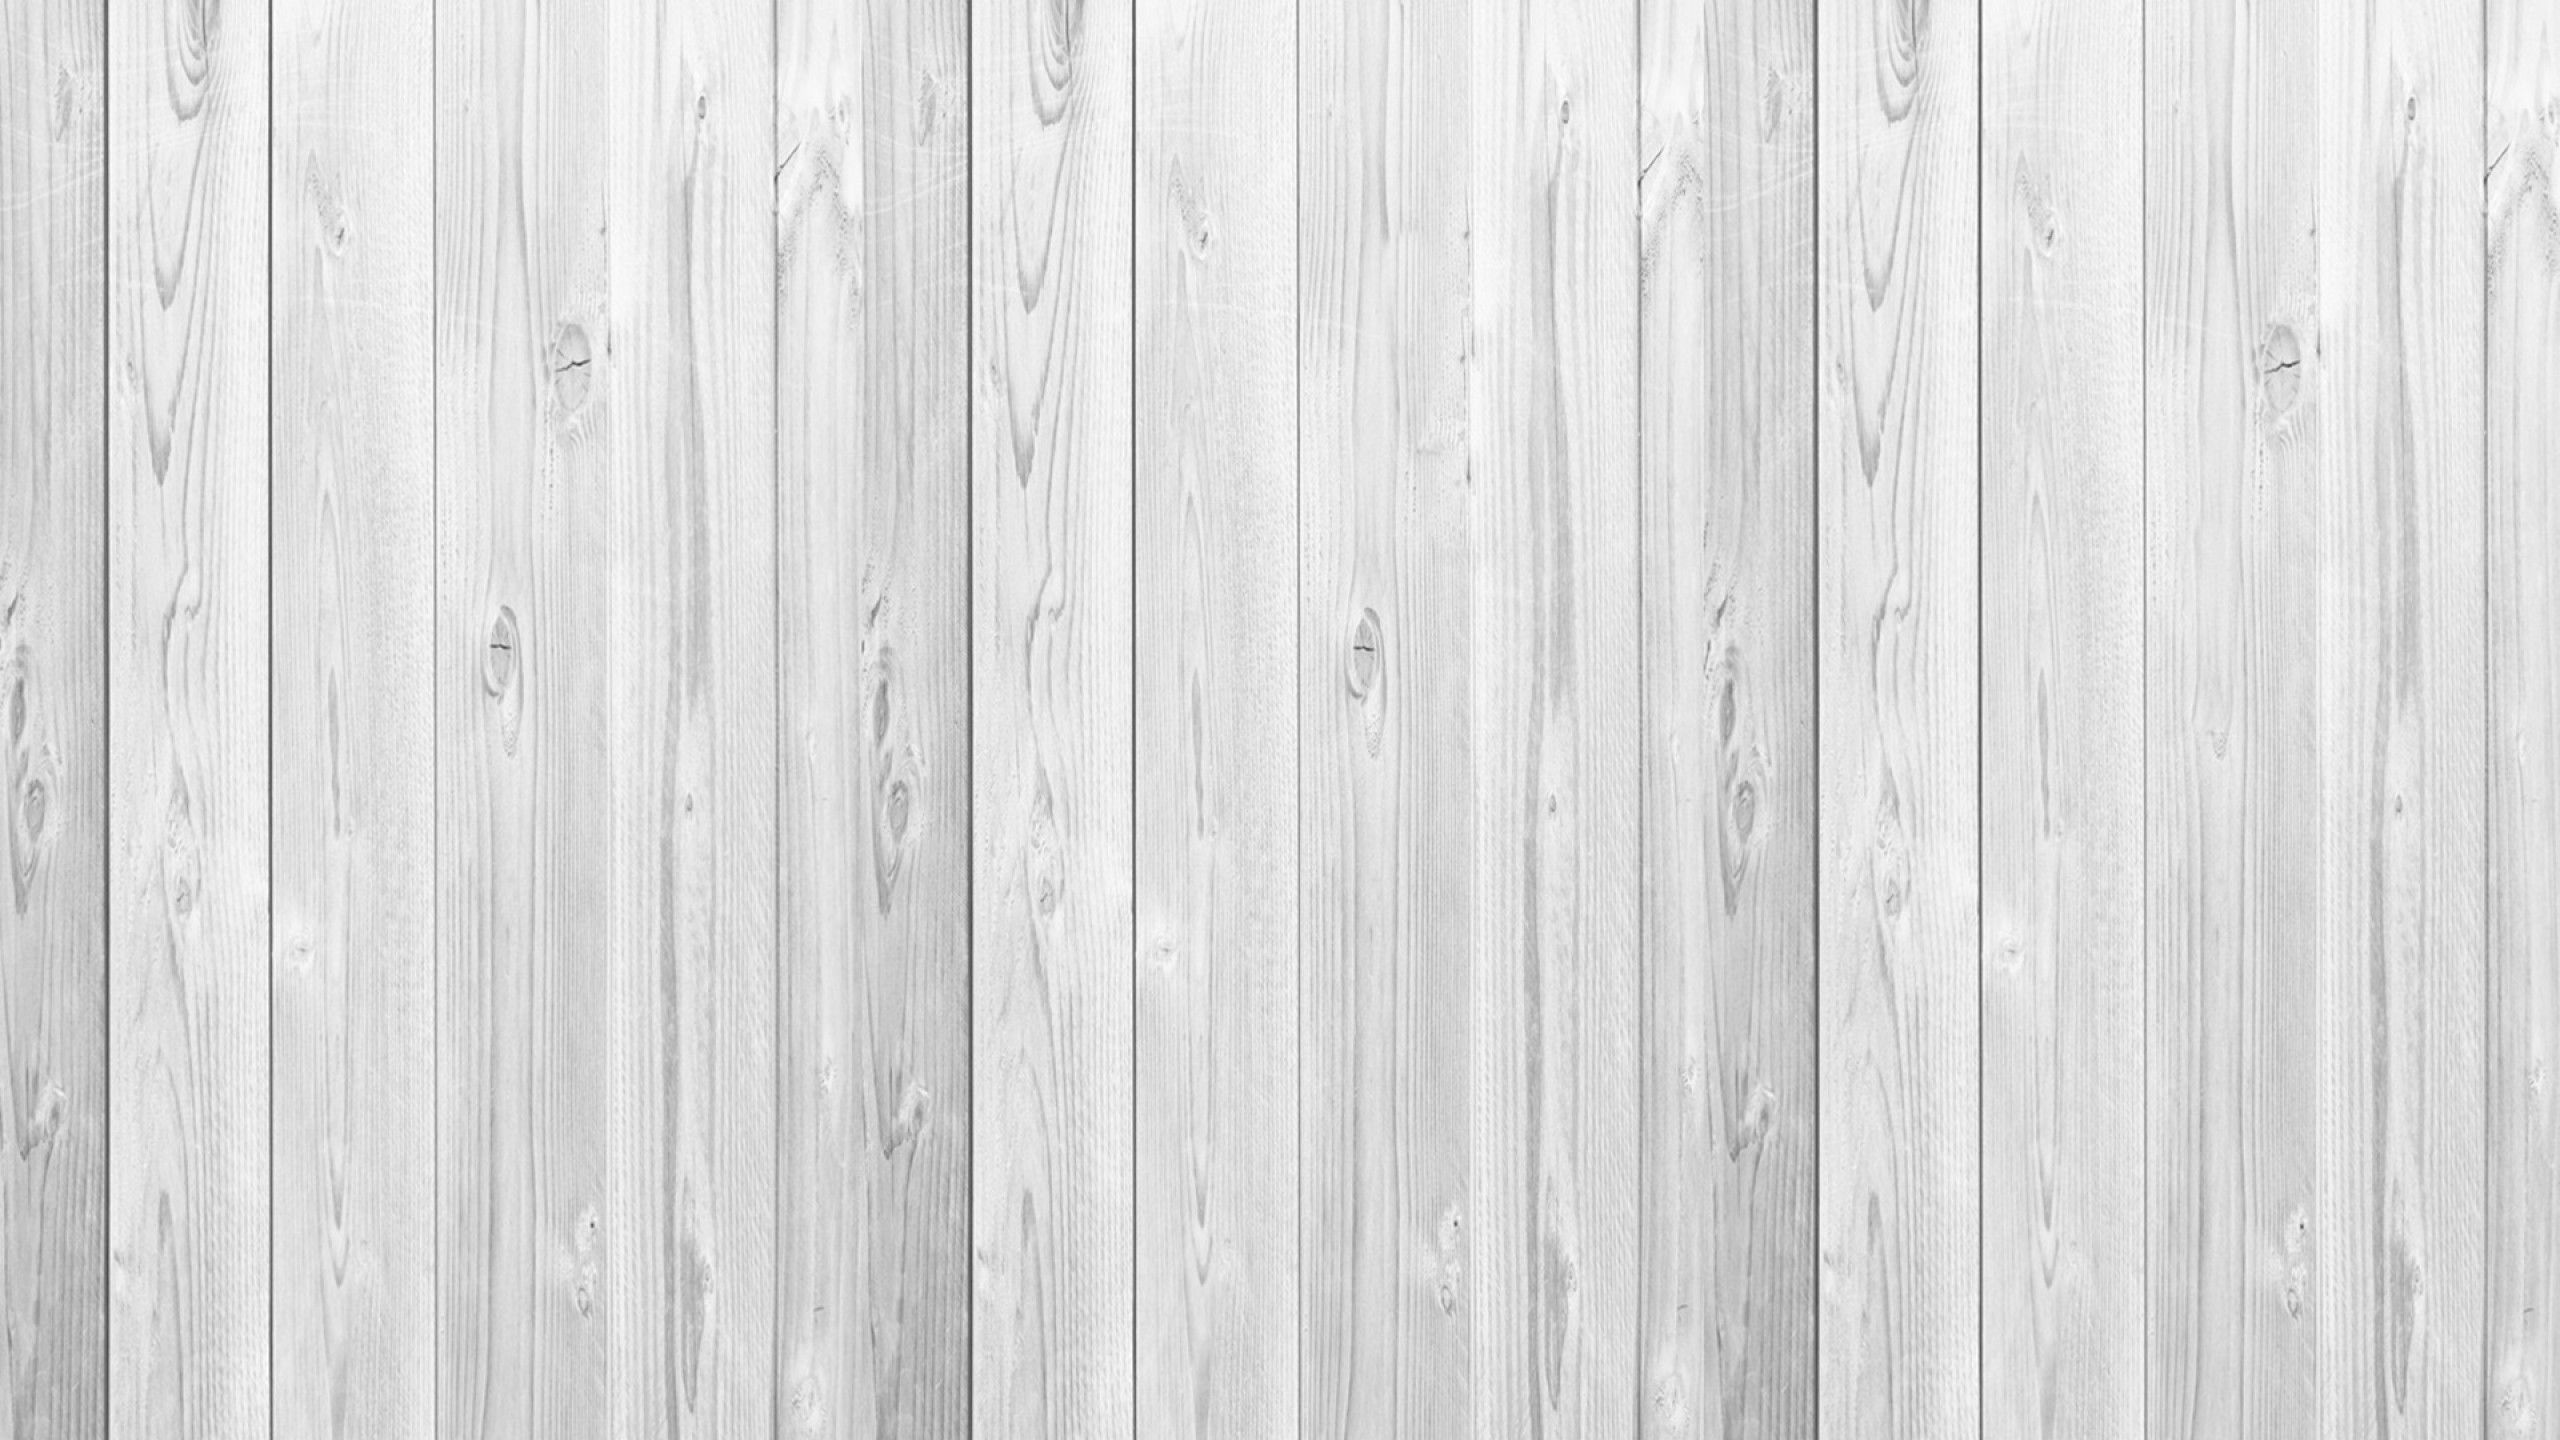  Holz Hintergrundbild 2560x1440. Kostenlose Hintergrundbilder Weiße Holzwand Mit Weißer Farbe, Bilder Für Ihren Desktop Und Fotos